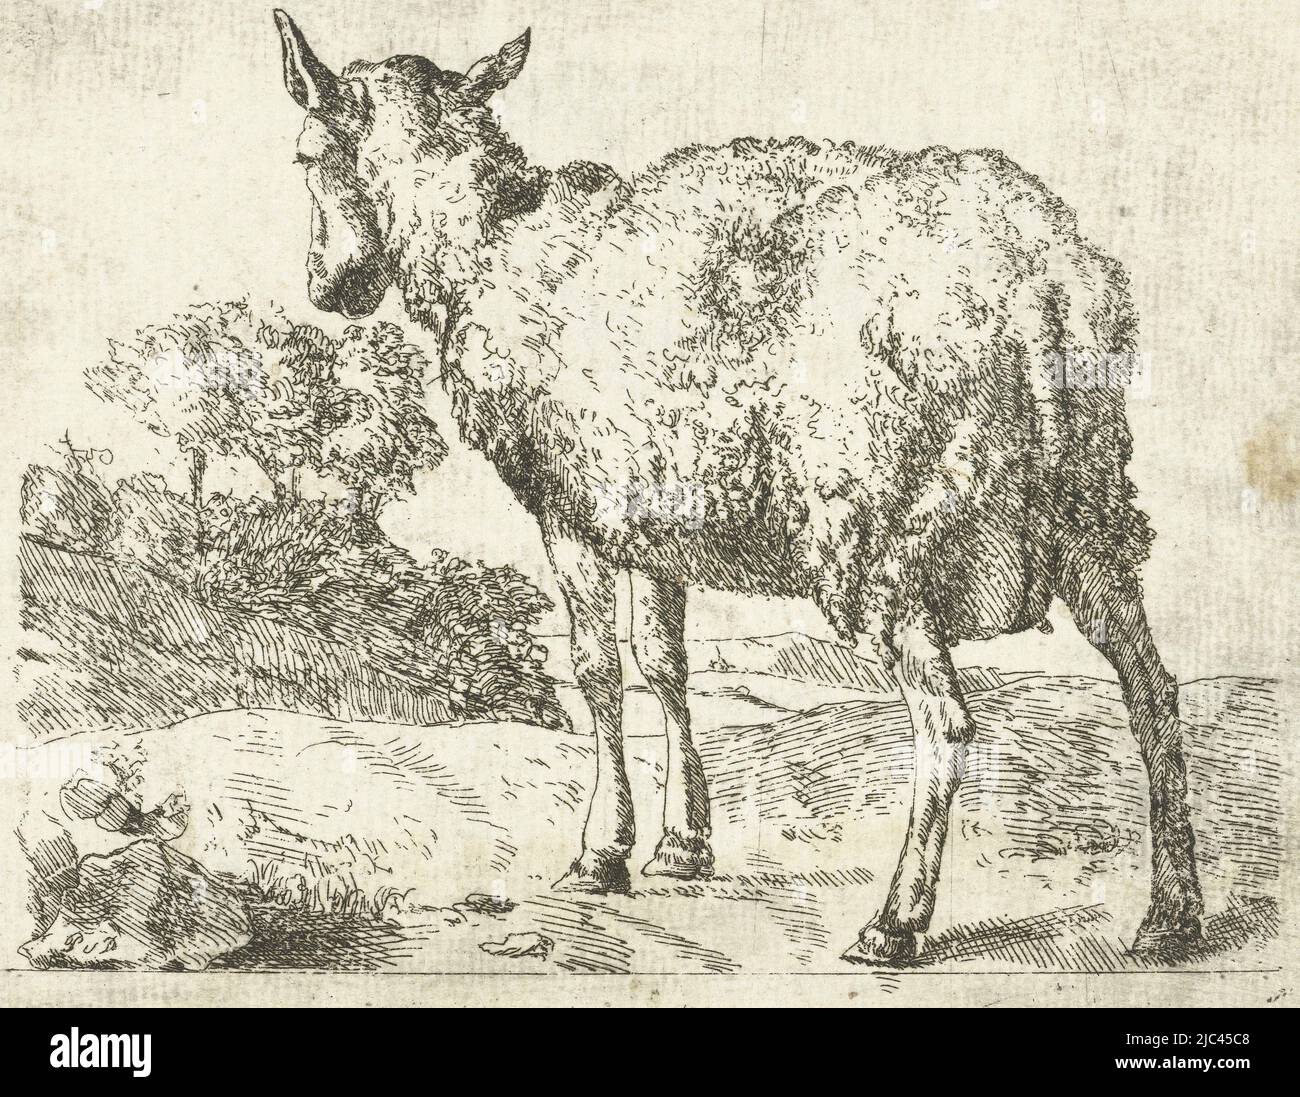 Copie, en miroir, de la cinquième impression de la série de moutons de  Marcus de Bye, mouton debout, vu de derrière, imprimerie: Anonyme, Marcus  de Bye, 1657 - c. 1800, papier, gravure,